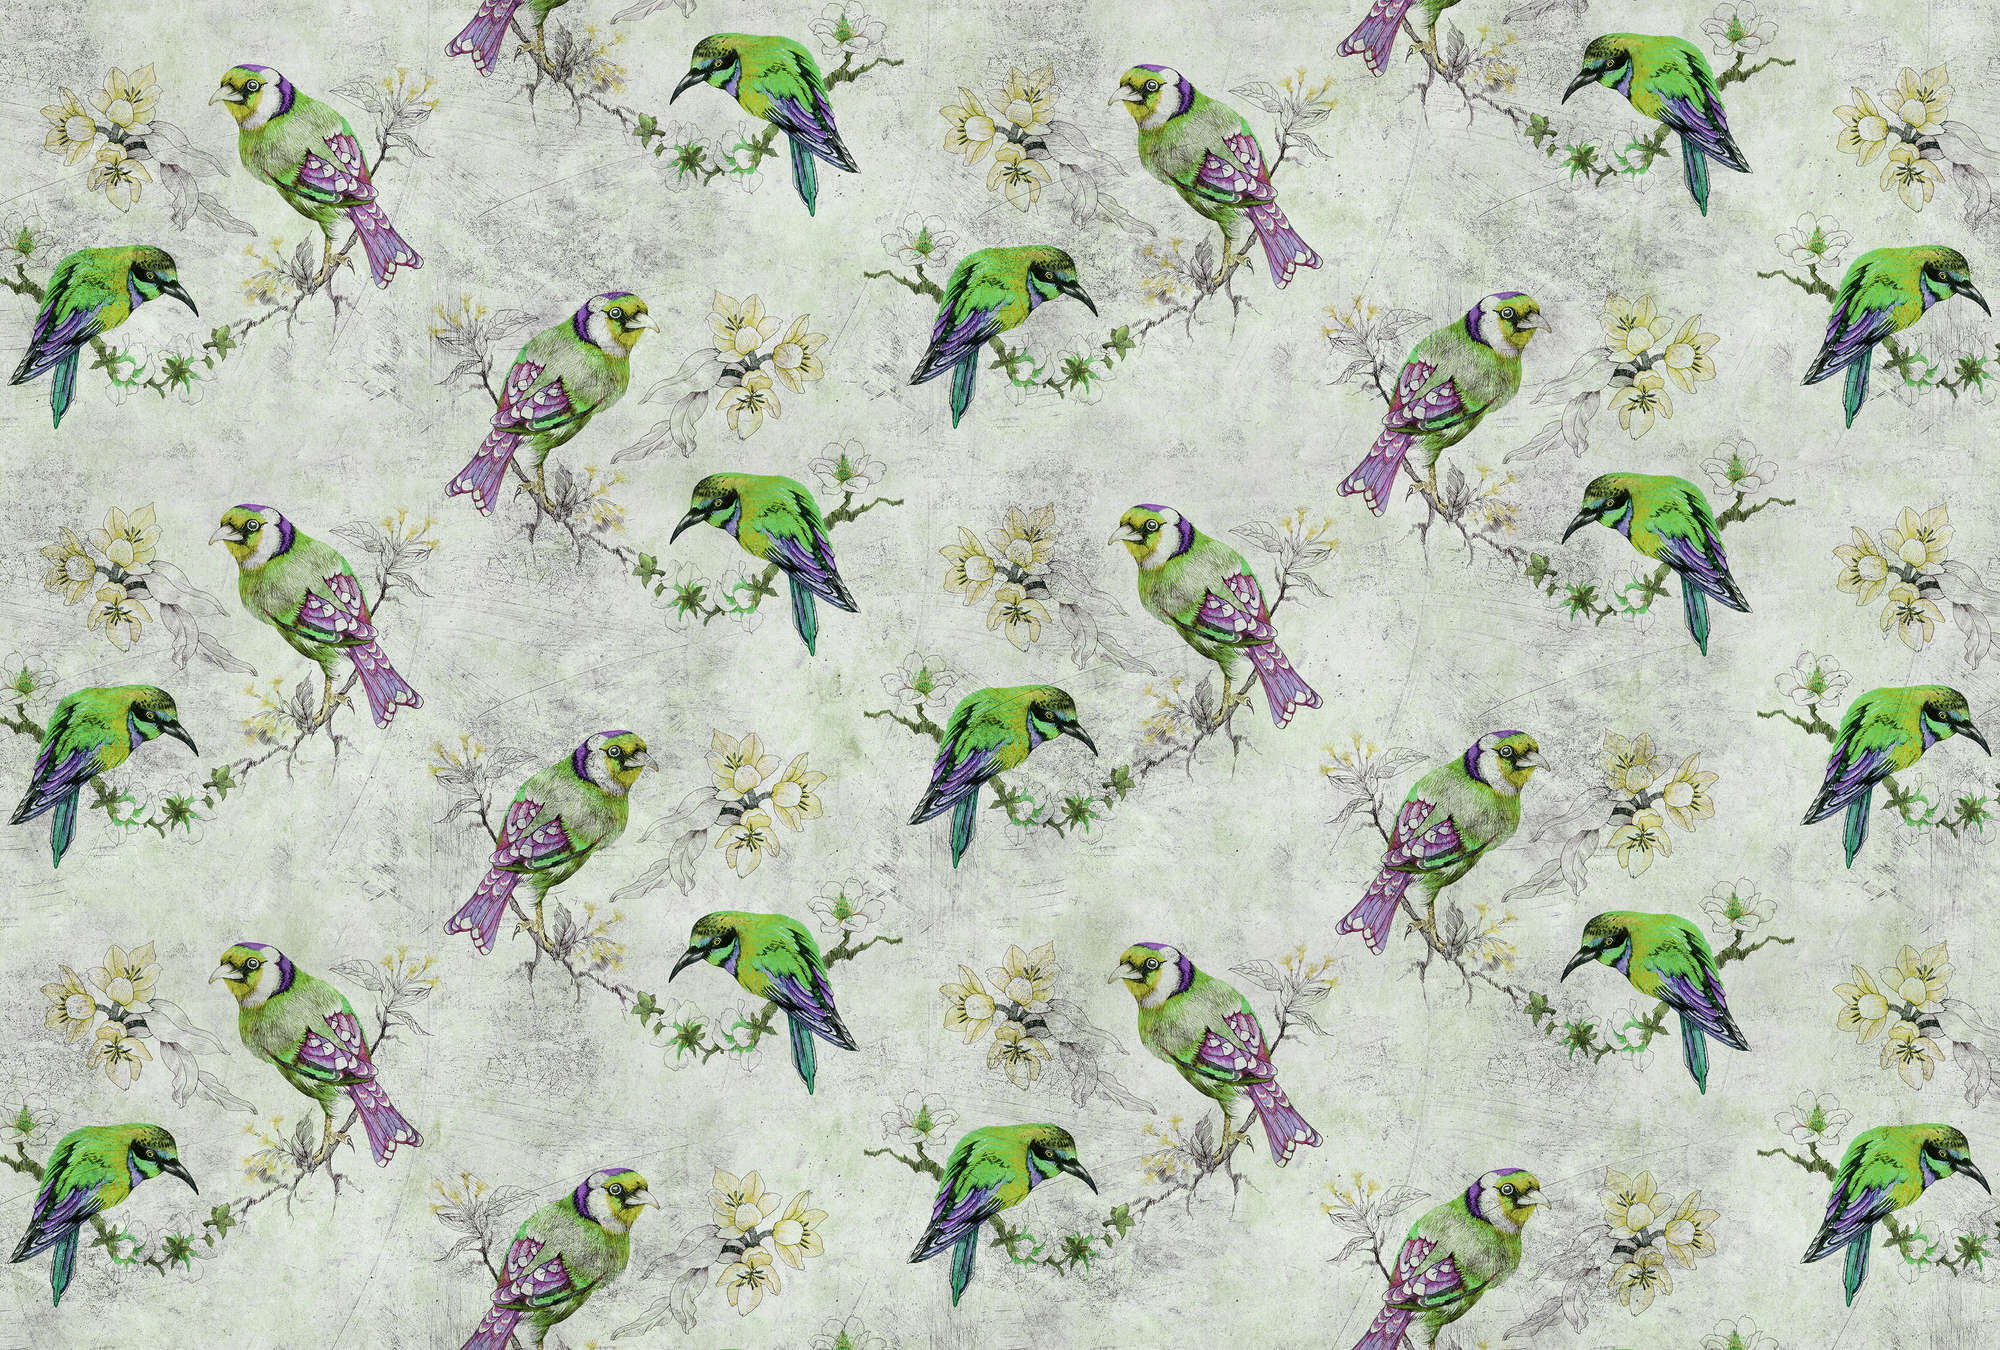             Love birds 2 - Bunte Fototapete in kratzer Struktur mit skizzierten Vögeln – Grau, Grün | Perlmutt Glattvlies
        